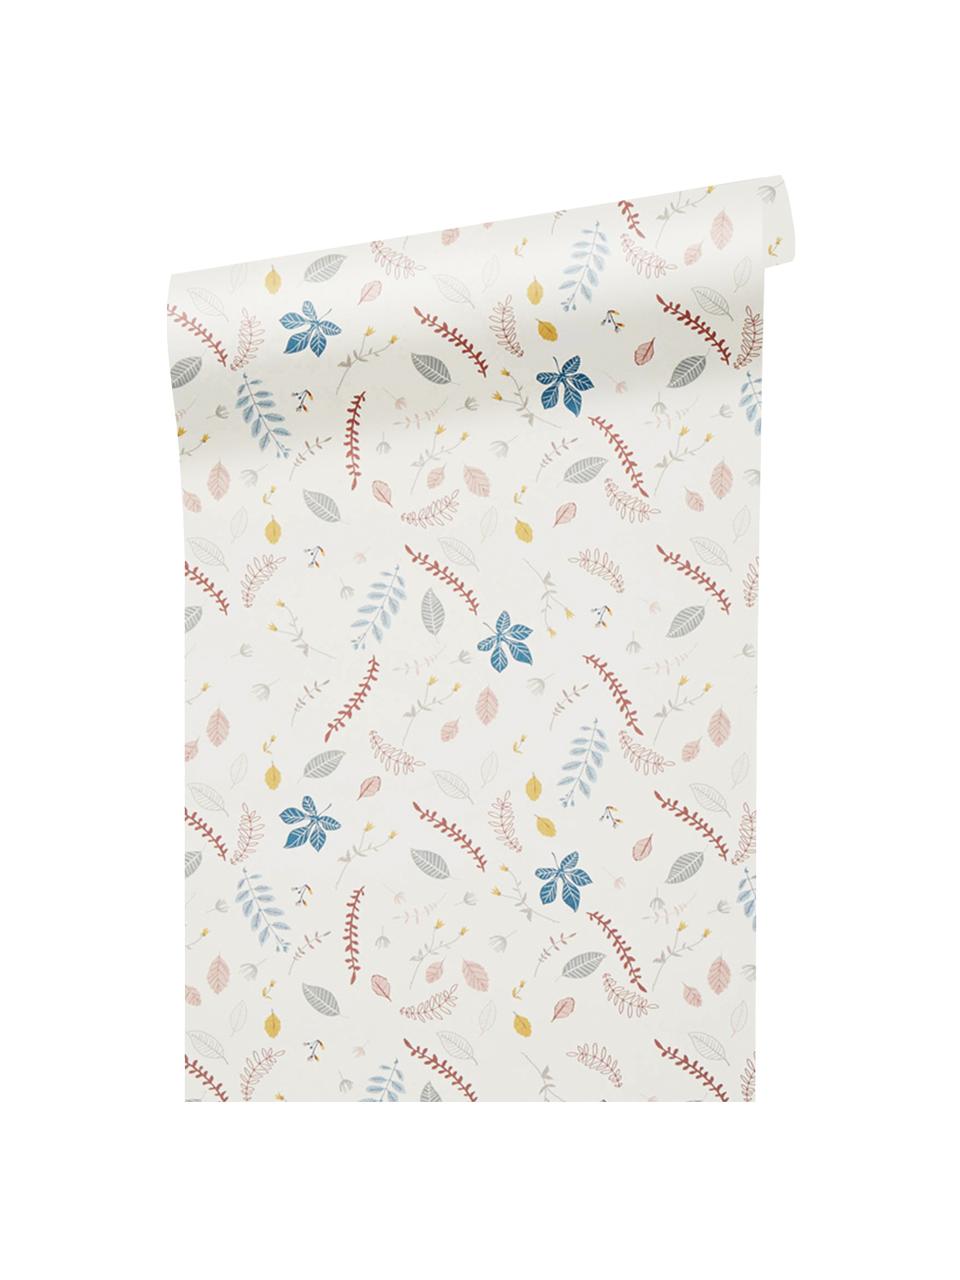 Tapeta Pressed Leaves, Papier, Kremowy, blady różowy, niebieski, szary, żółty, S 53 x D 1005 cm